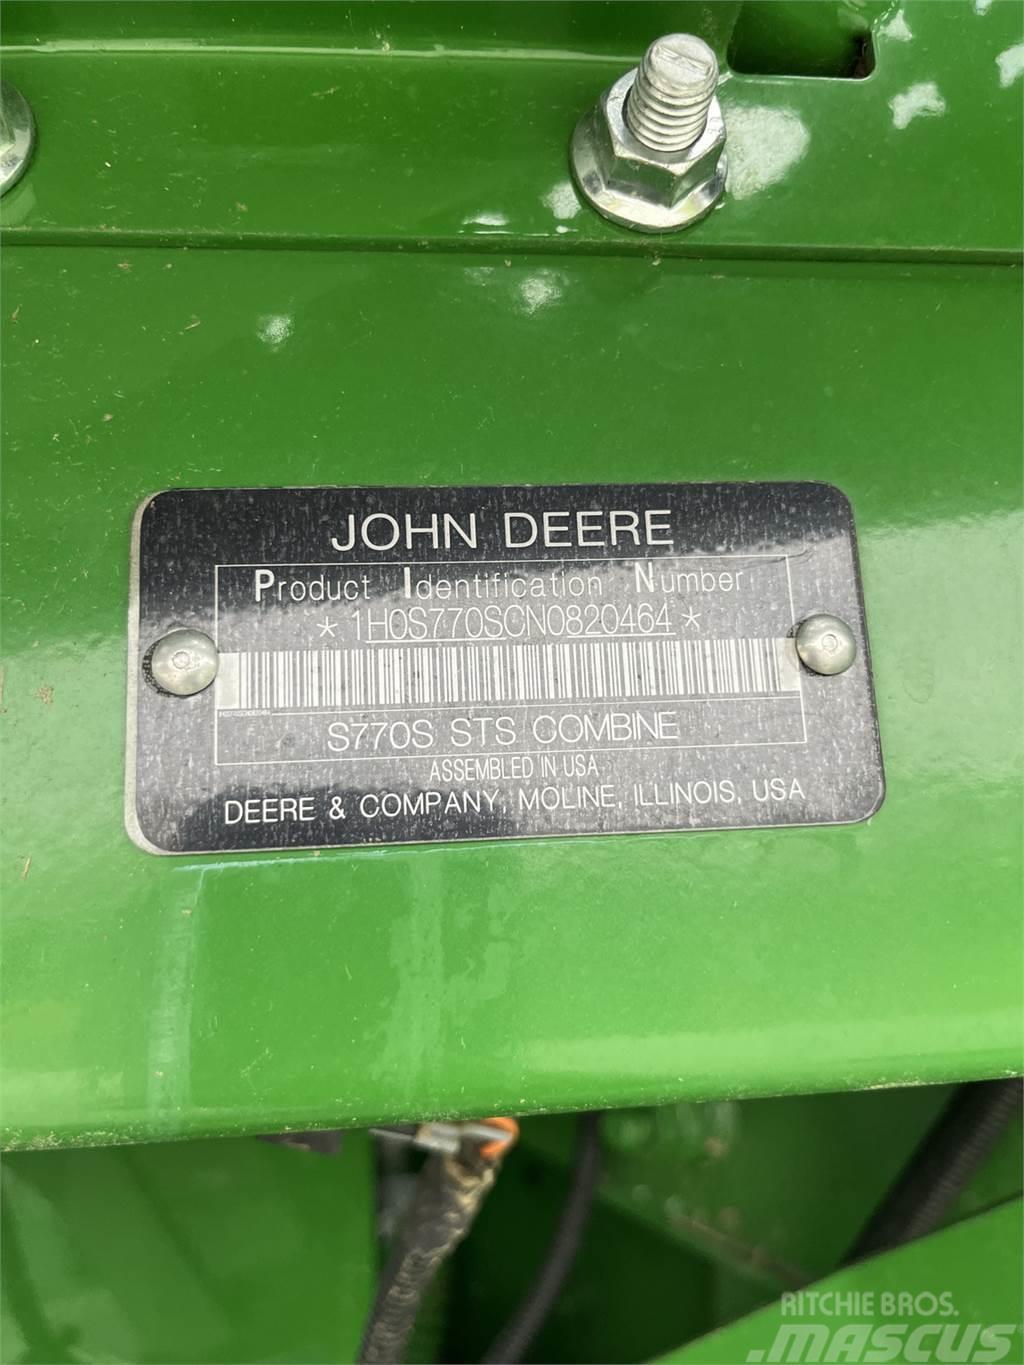 John Deere S770 Biçerdöverler